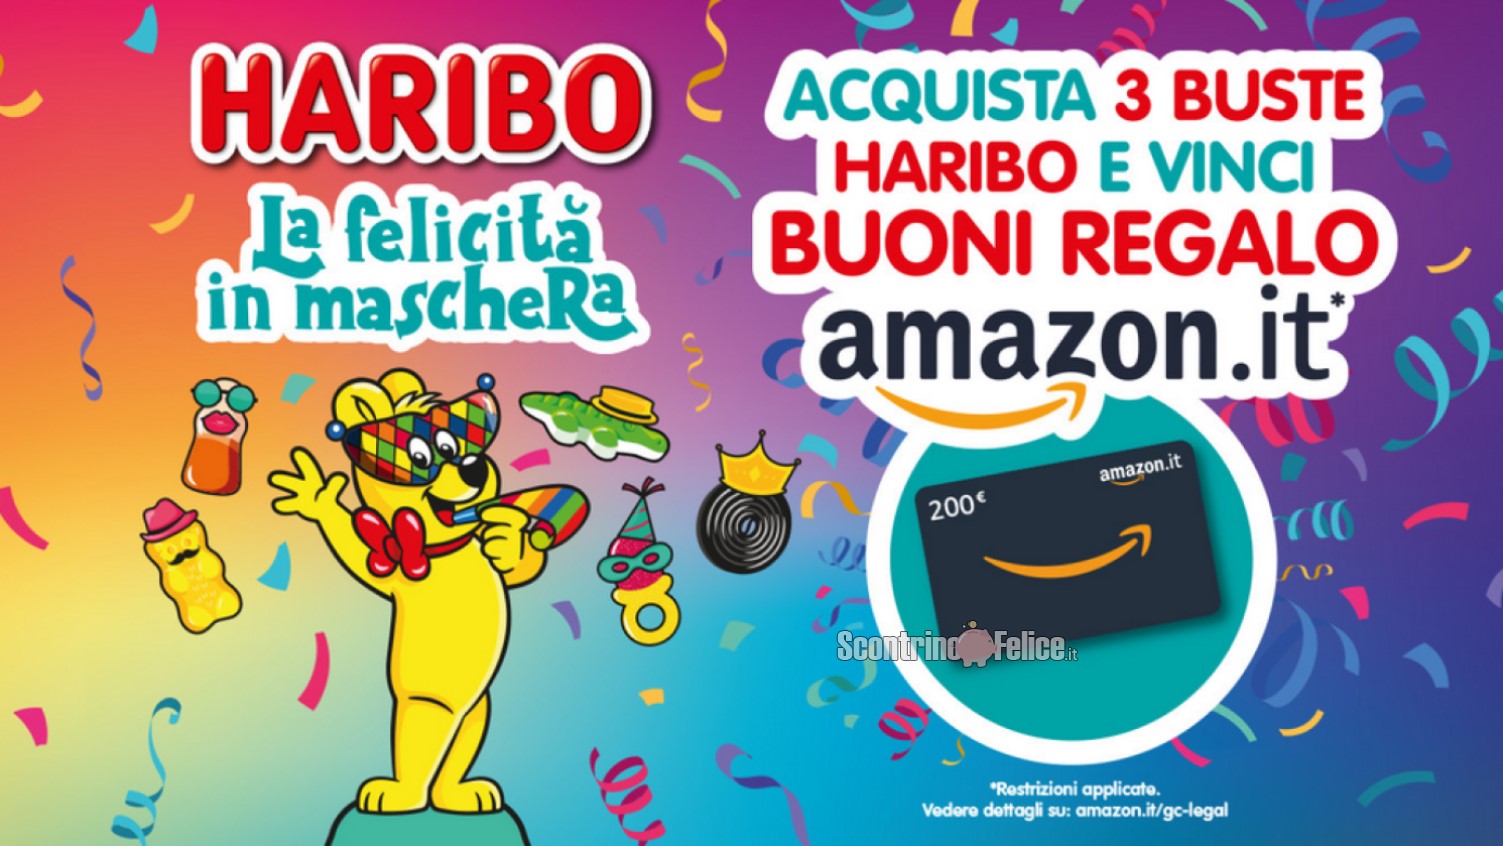 Concorso Haribo "La felicità in maschera": vinci buoni regalo Amazon da 200 euro!